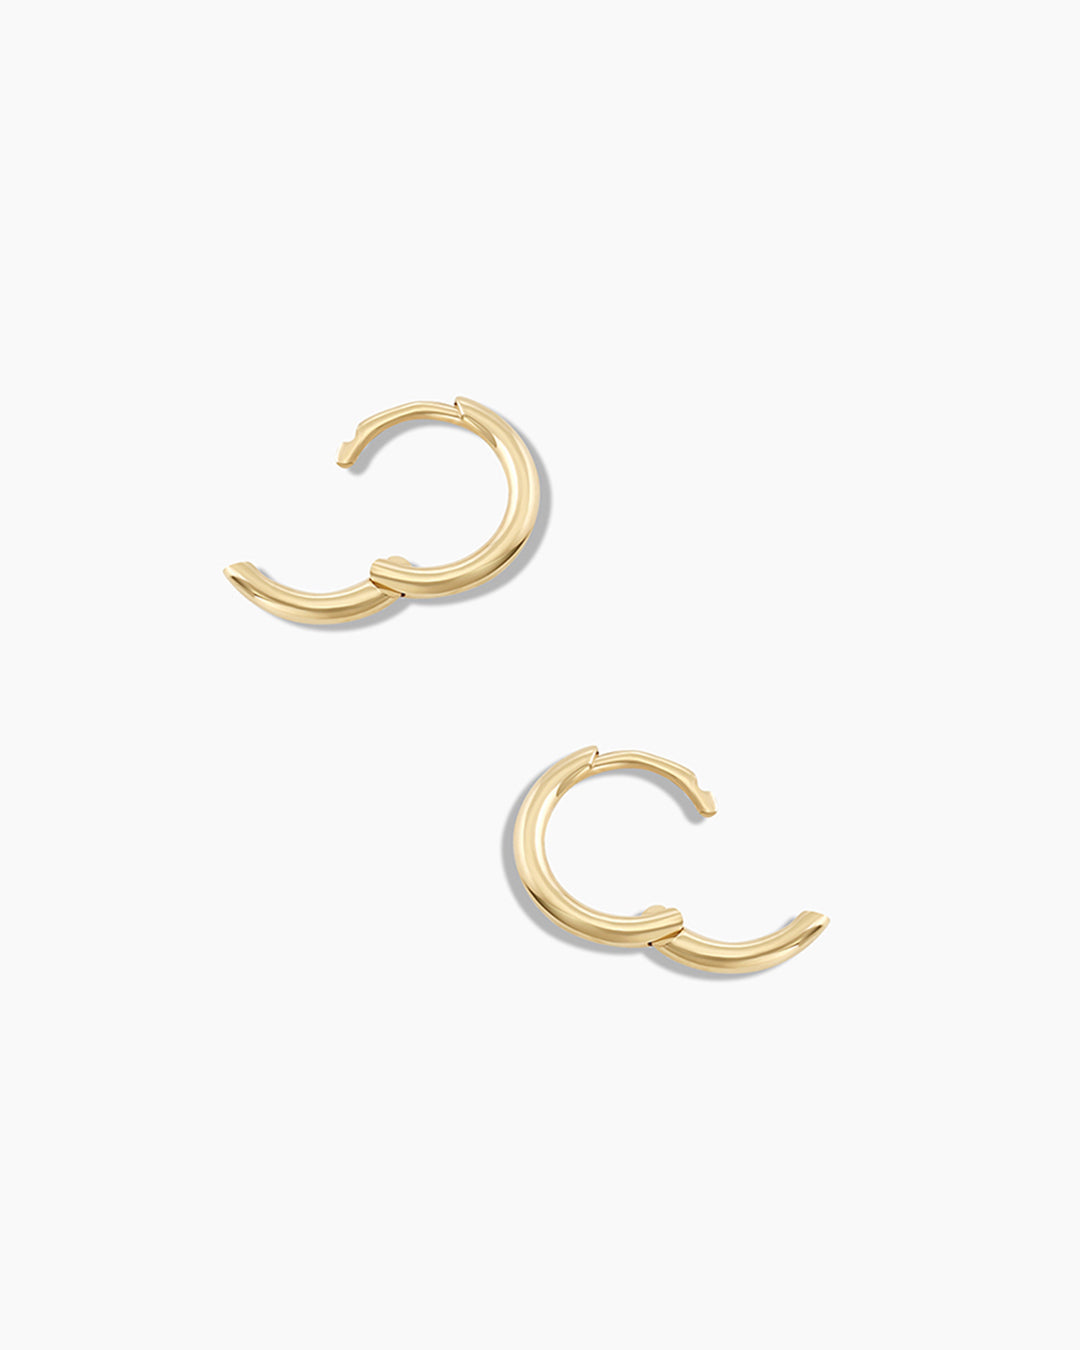 Terra Newport Earrings in 14k Gold - 14k Yellow Gold